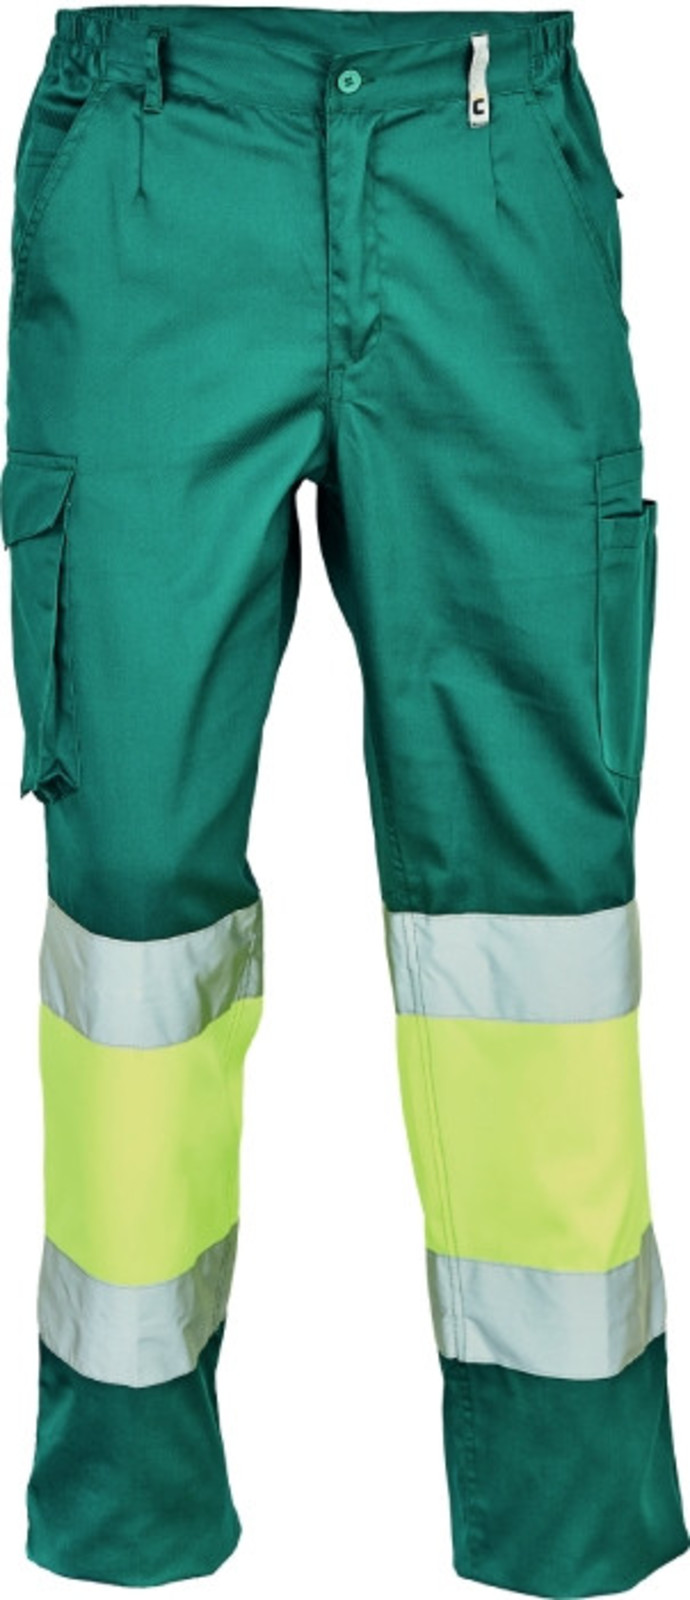 Pracovné reflexné nohavice Cerva Ciudades Bilbao HV - veľkosť: 64, farba: zelená/žltá